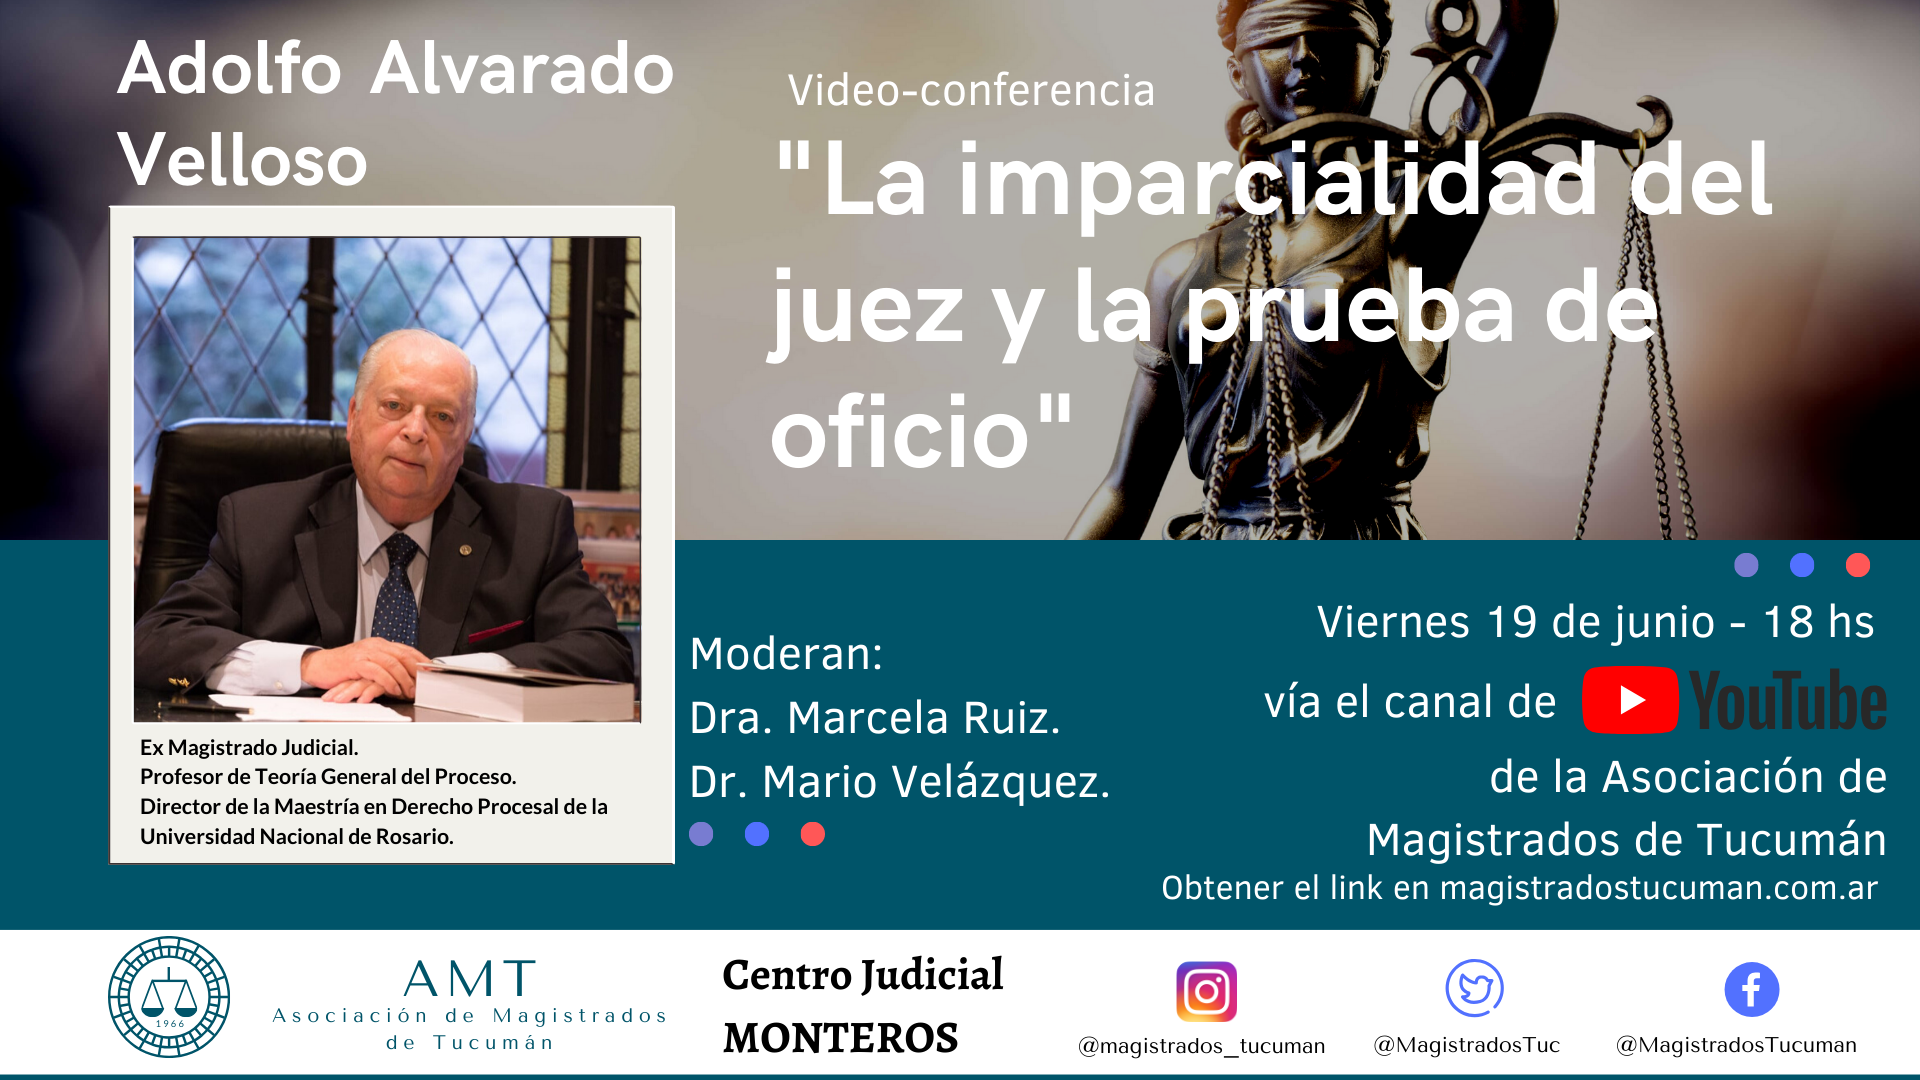 Vuelva a ver la conferencia de Adolfo Alvarado Velloso «La imparcialidad del juez y la prueba de oficio»